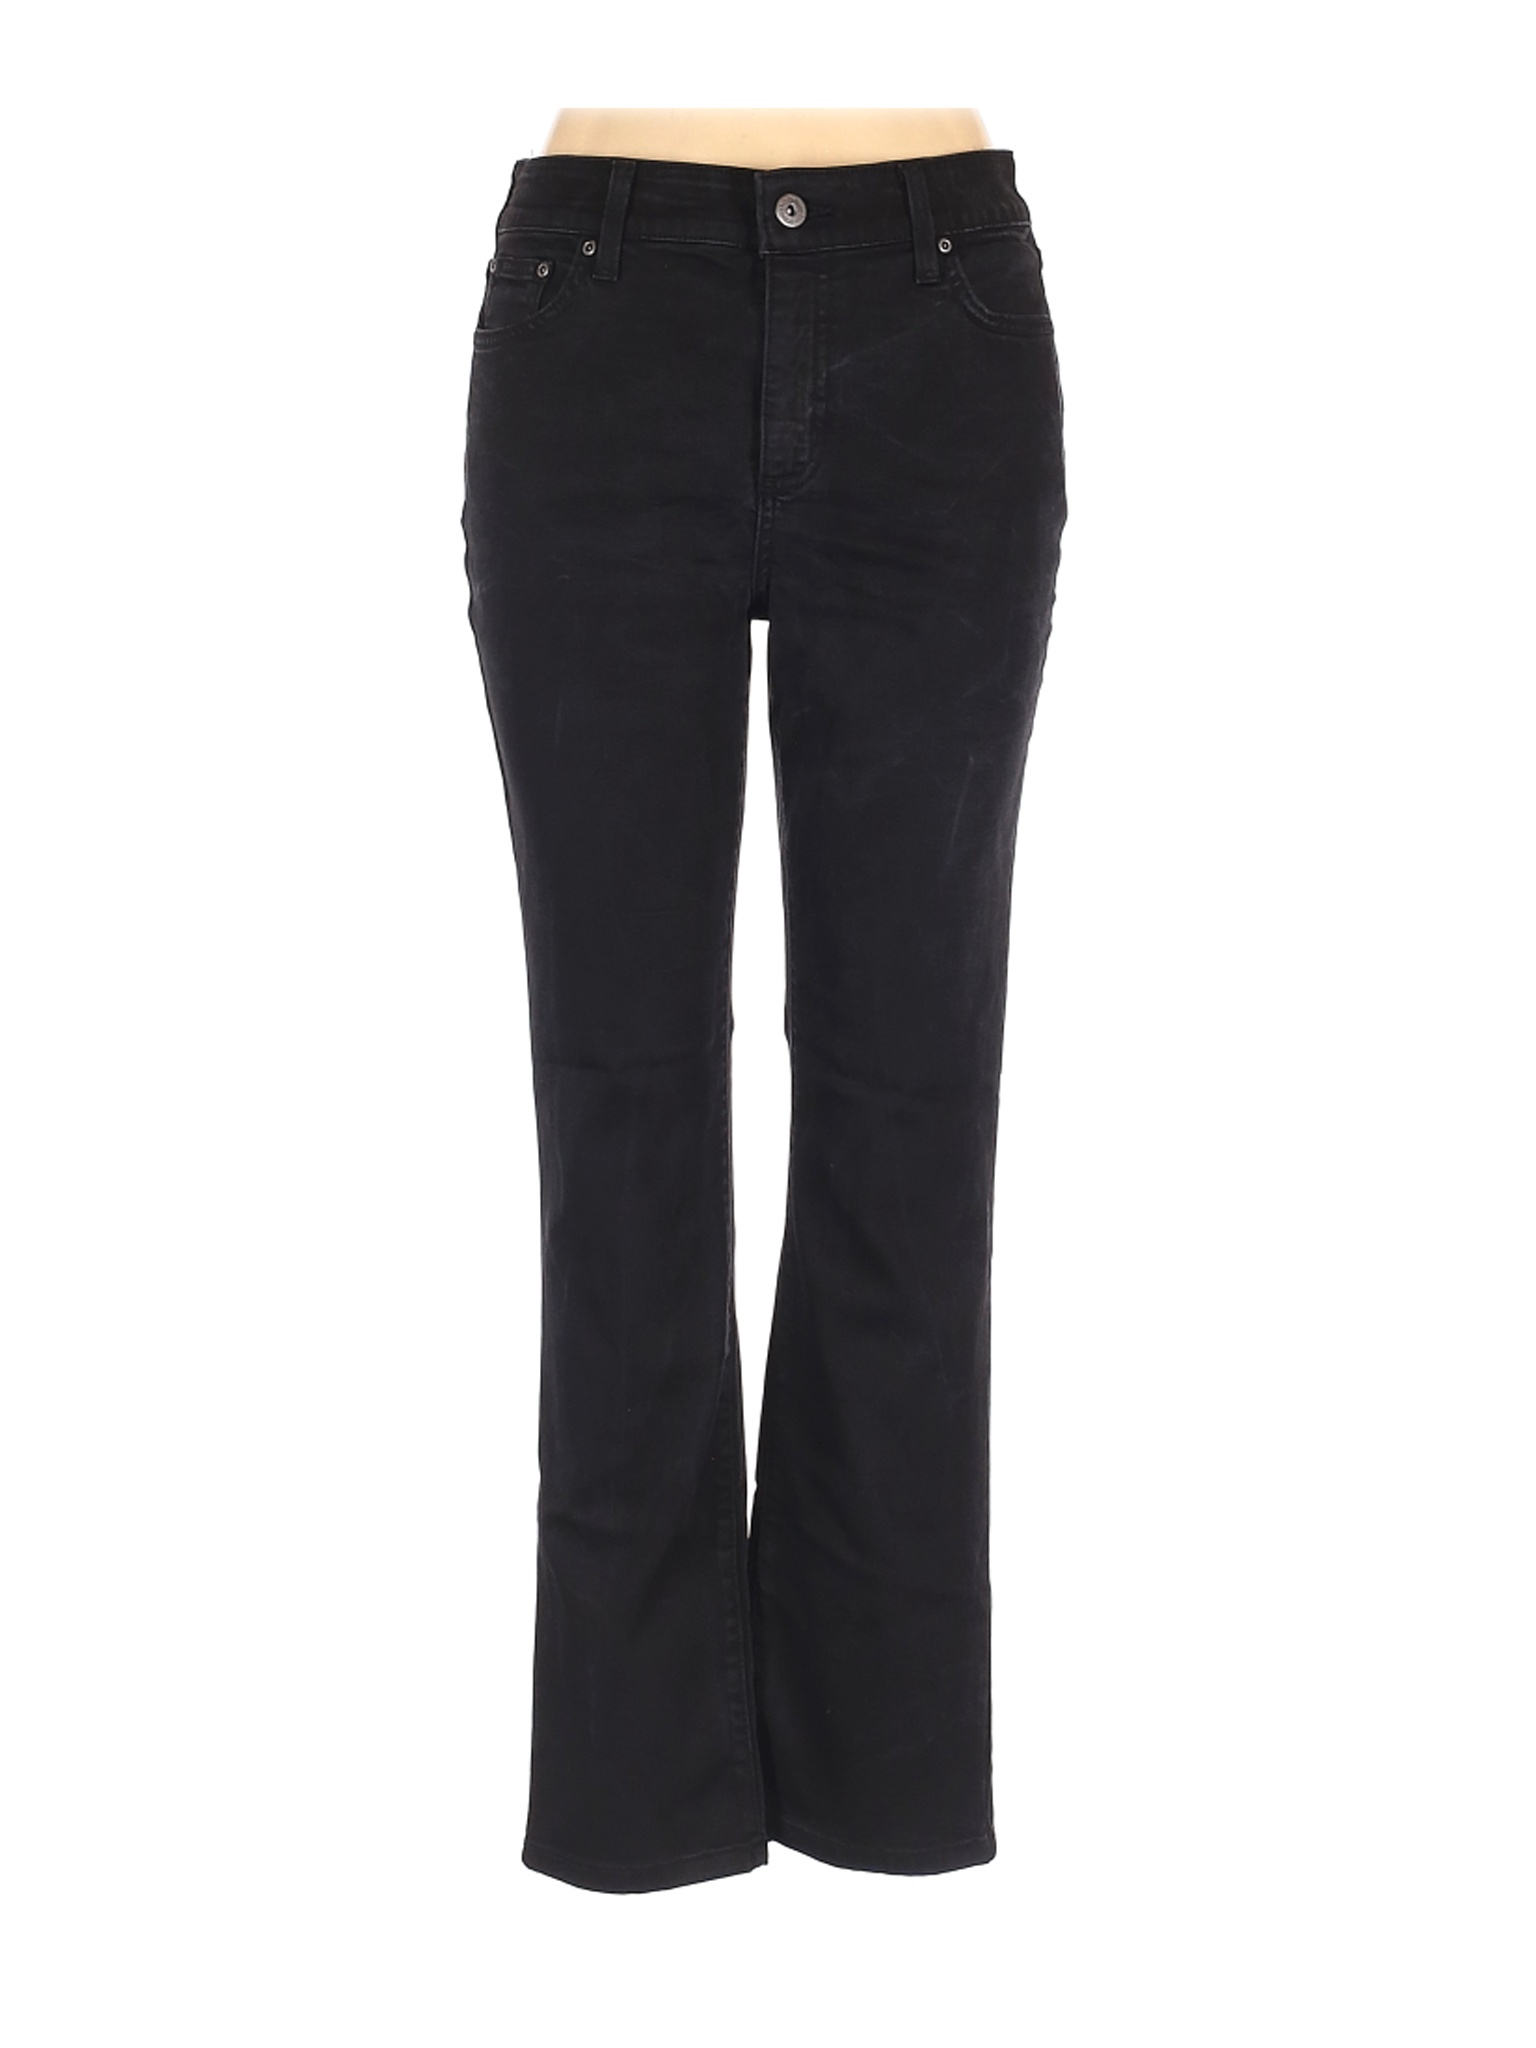 St. John Women Black Jeans 12 | eBay